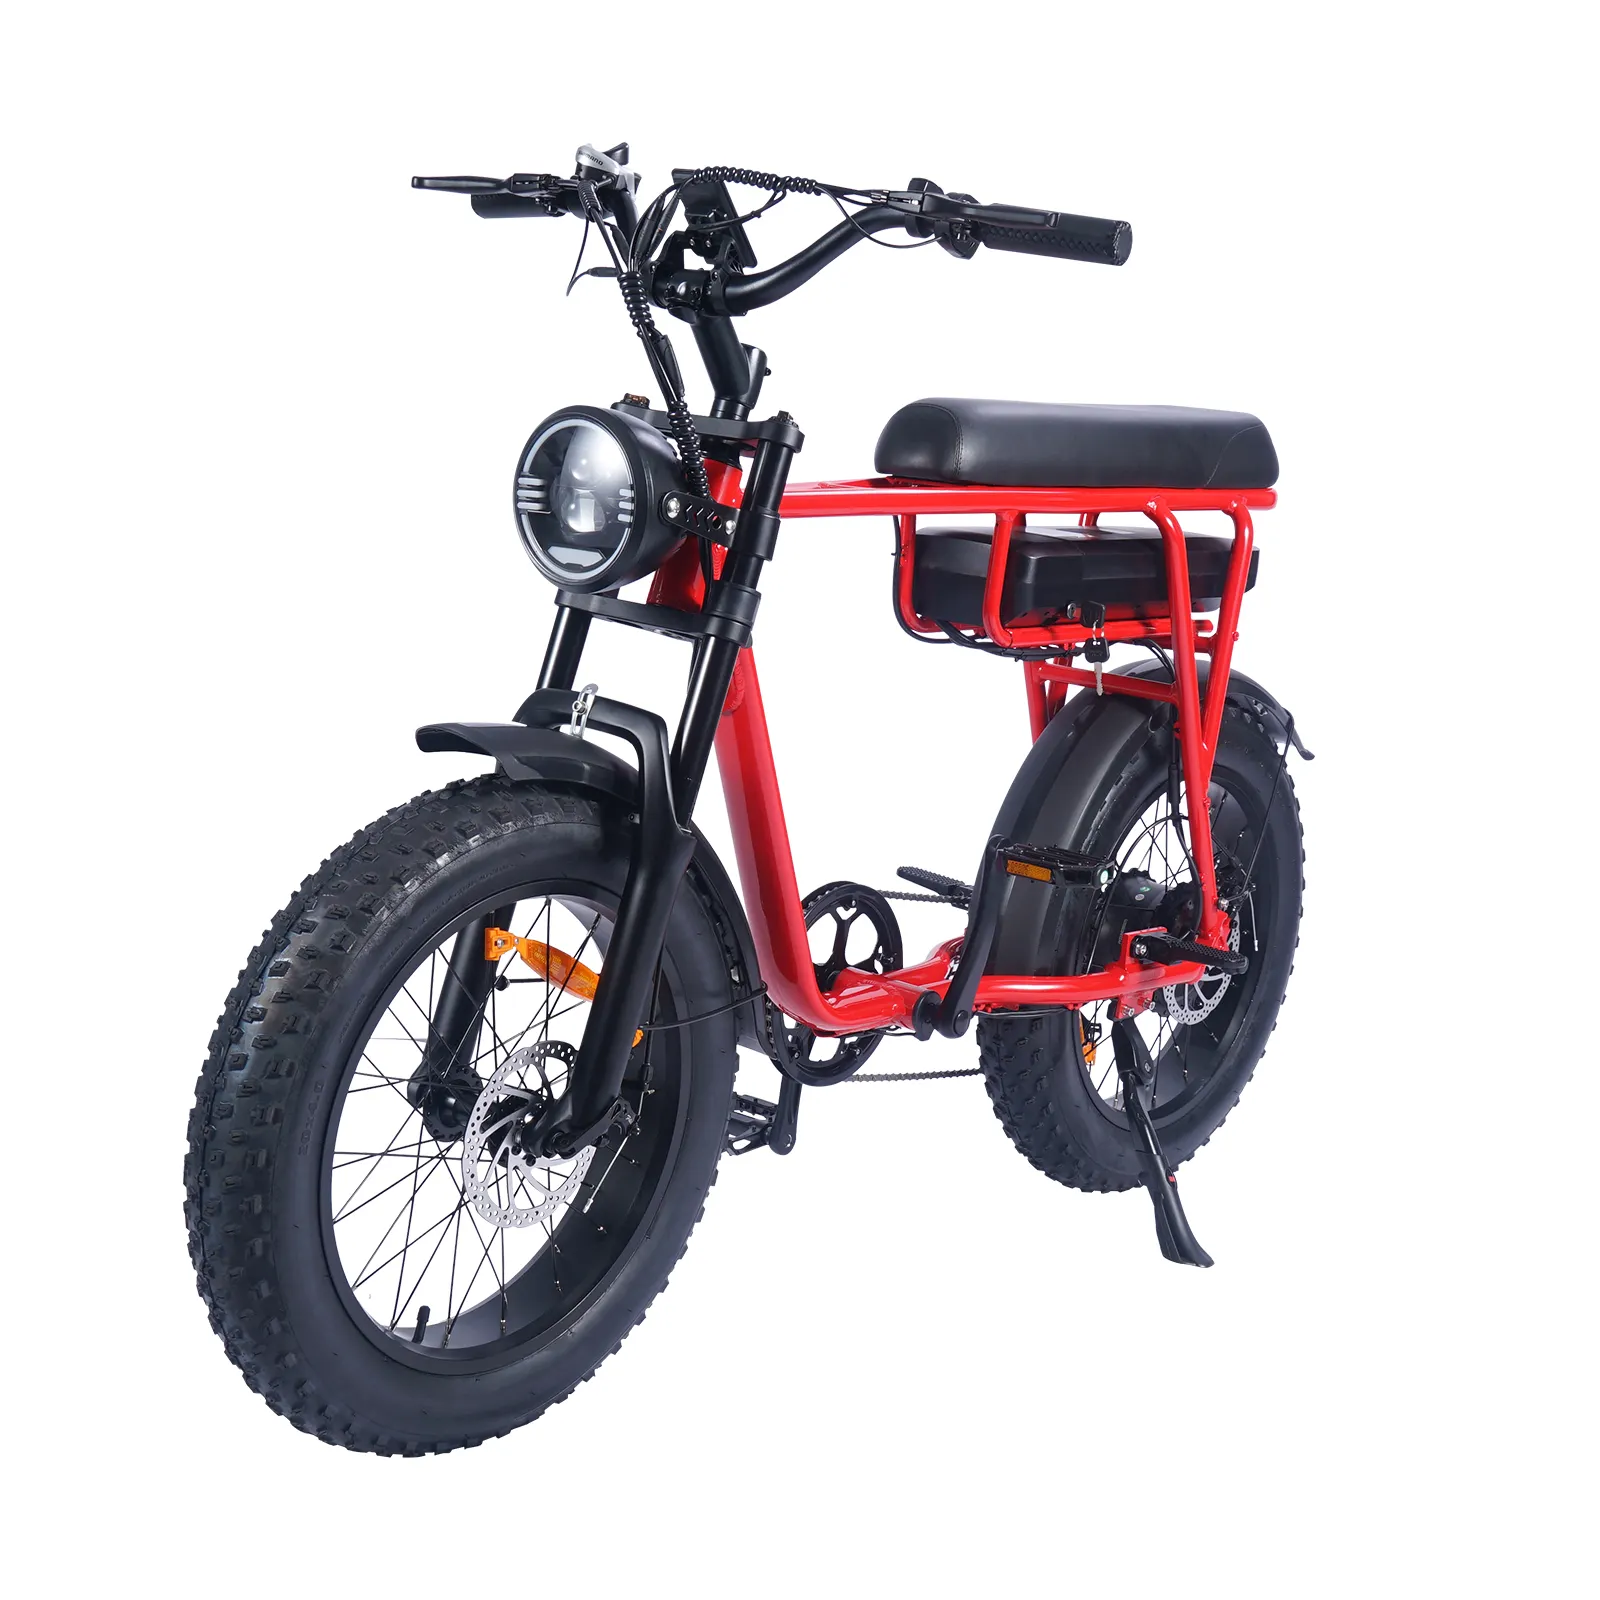 Bicicletta elettrica Pantera a basso costo stile ciclomotore bici elettrica da donna 500w Fat Tire eBike bicicletta elettrica in promozione